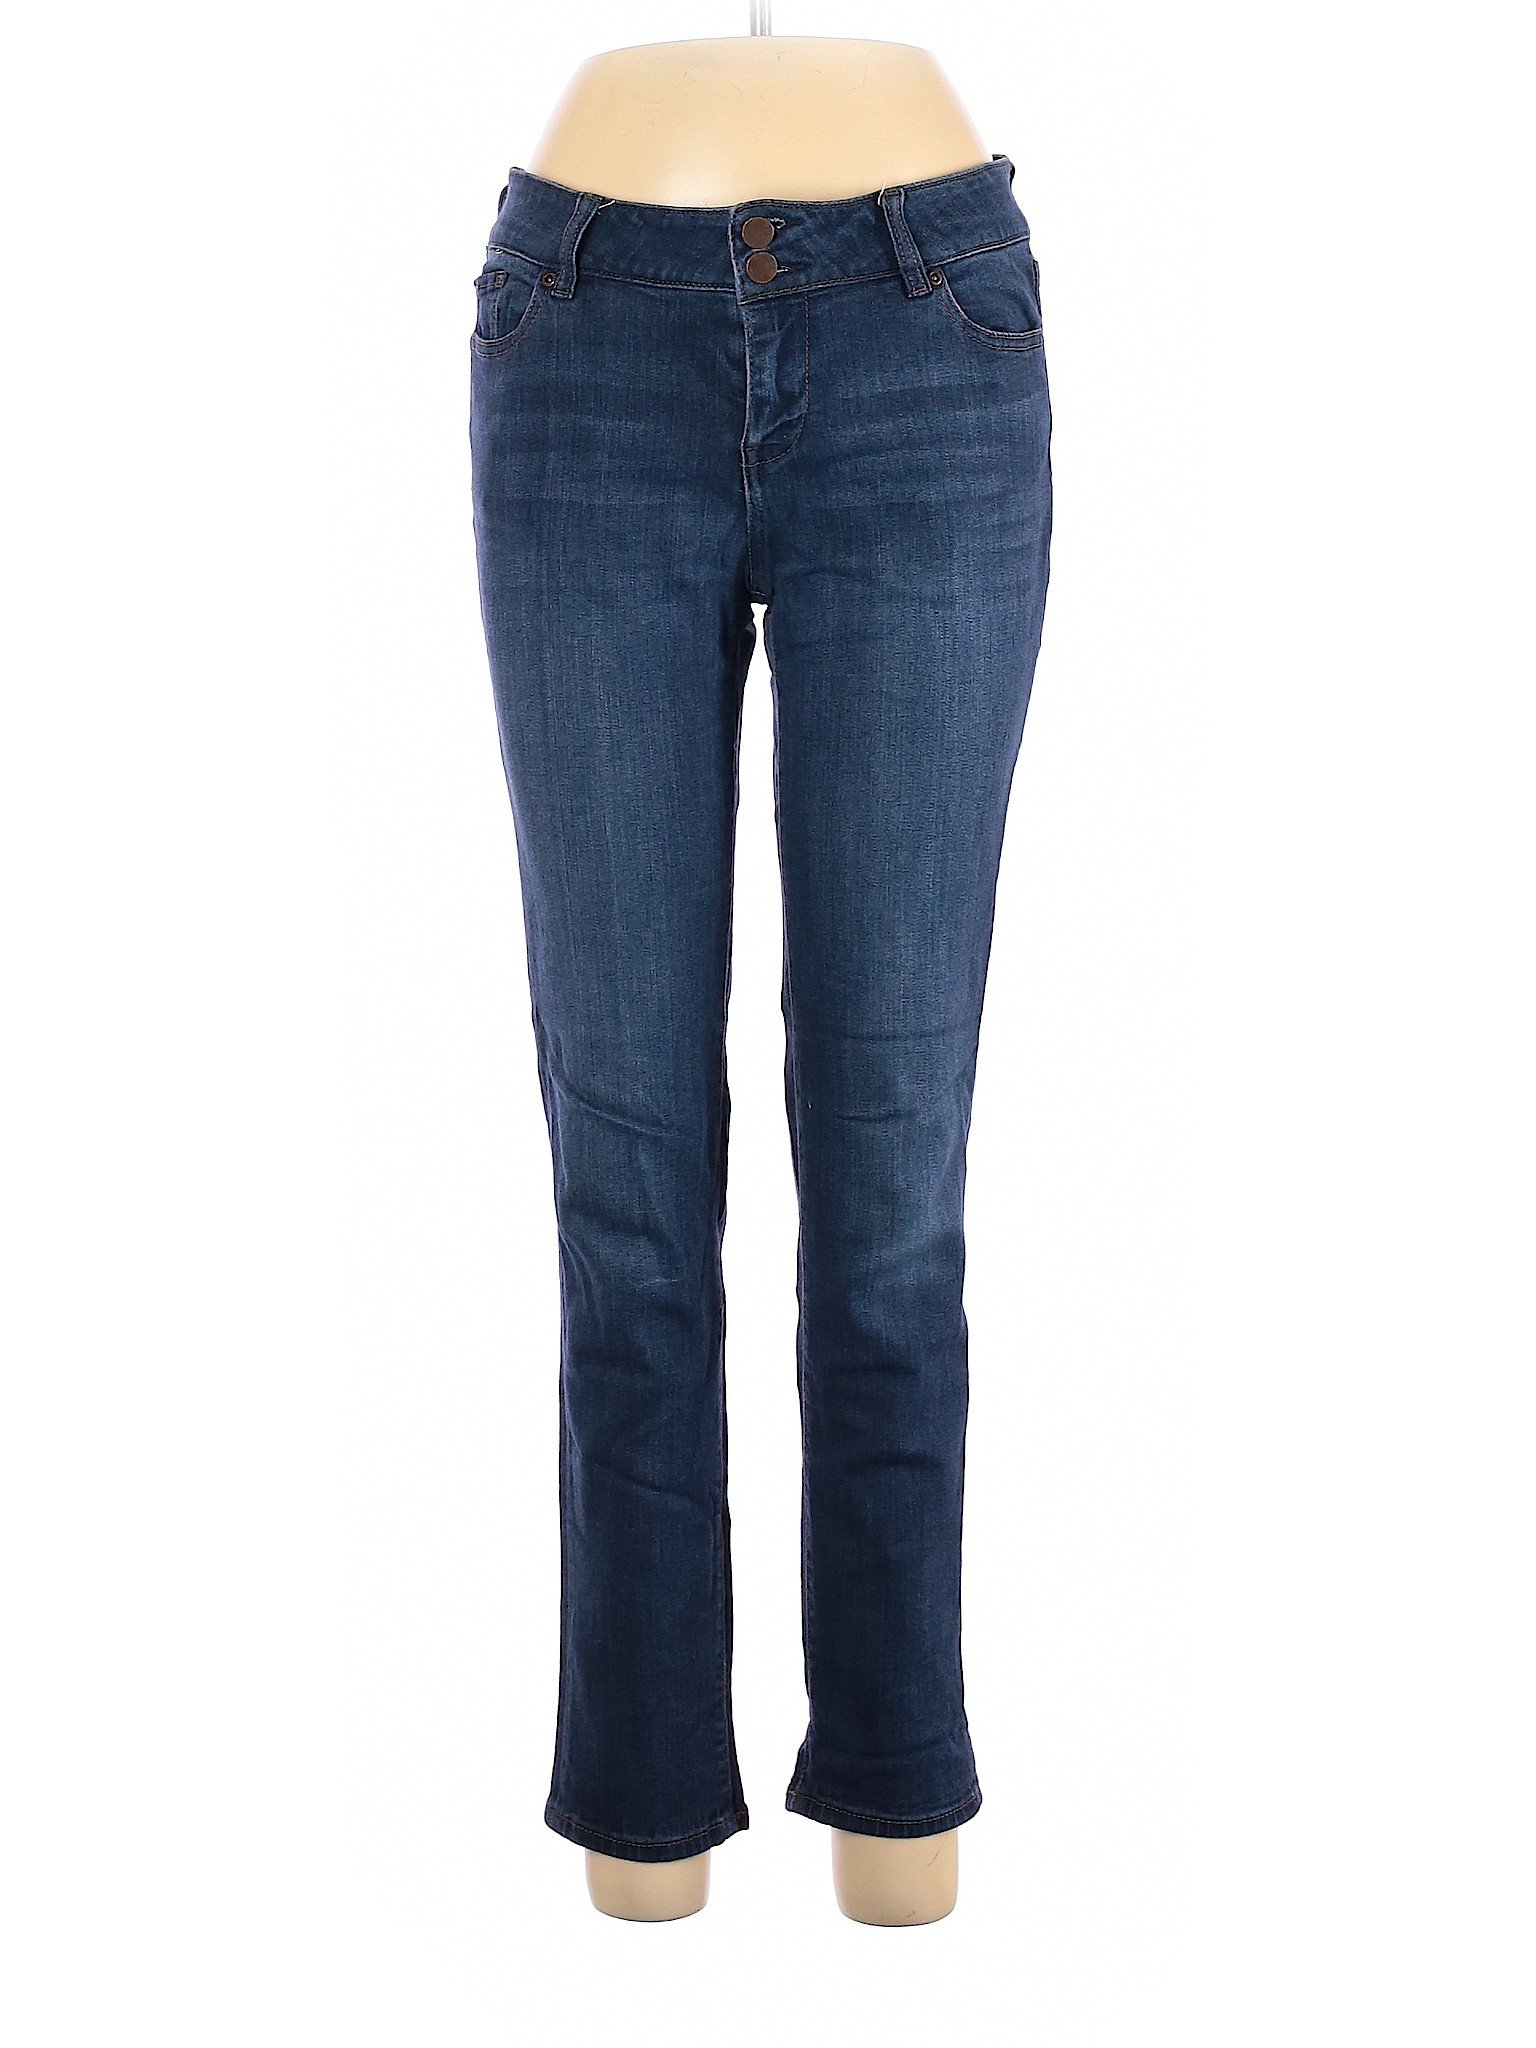 Soho JEANS NEW YORK & COMPANY Women Blue Jeans 6 | eBay